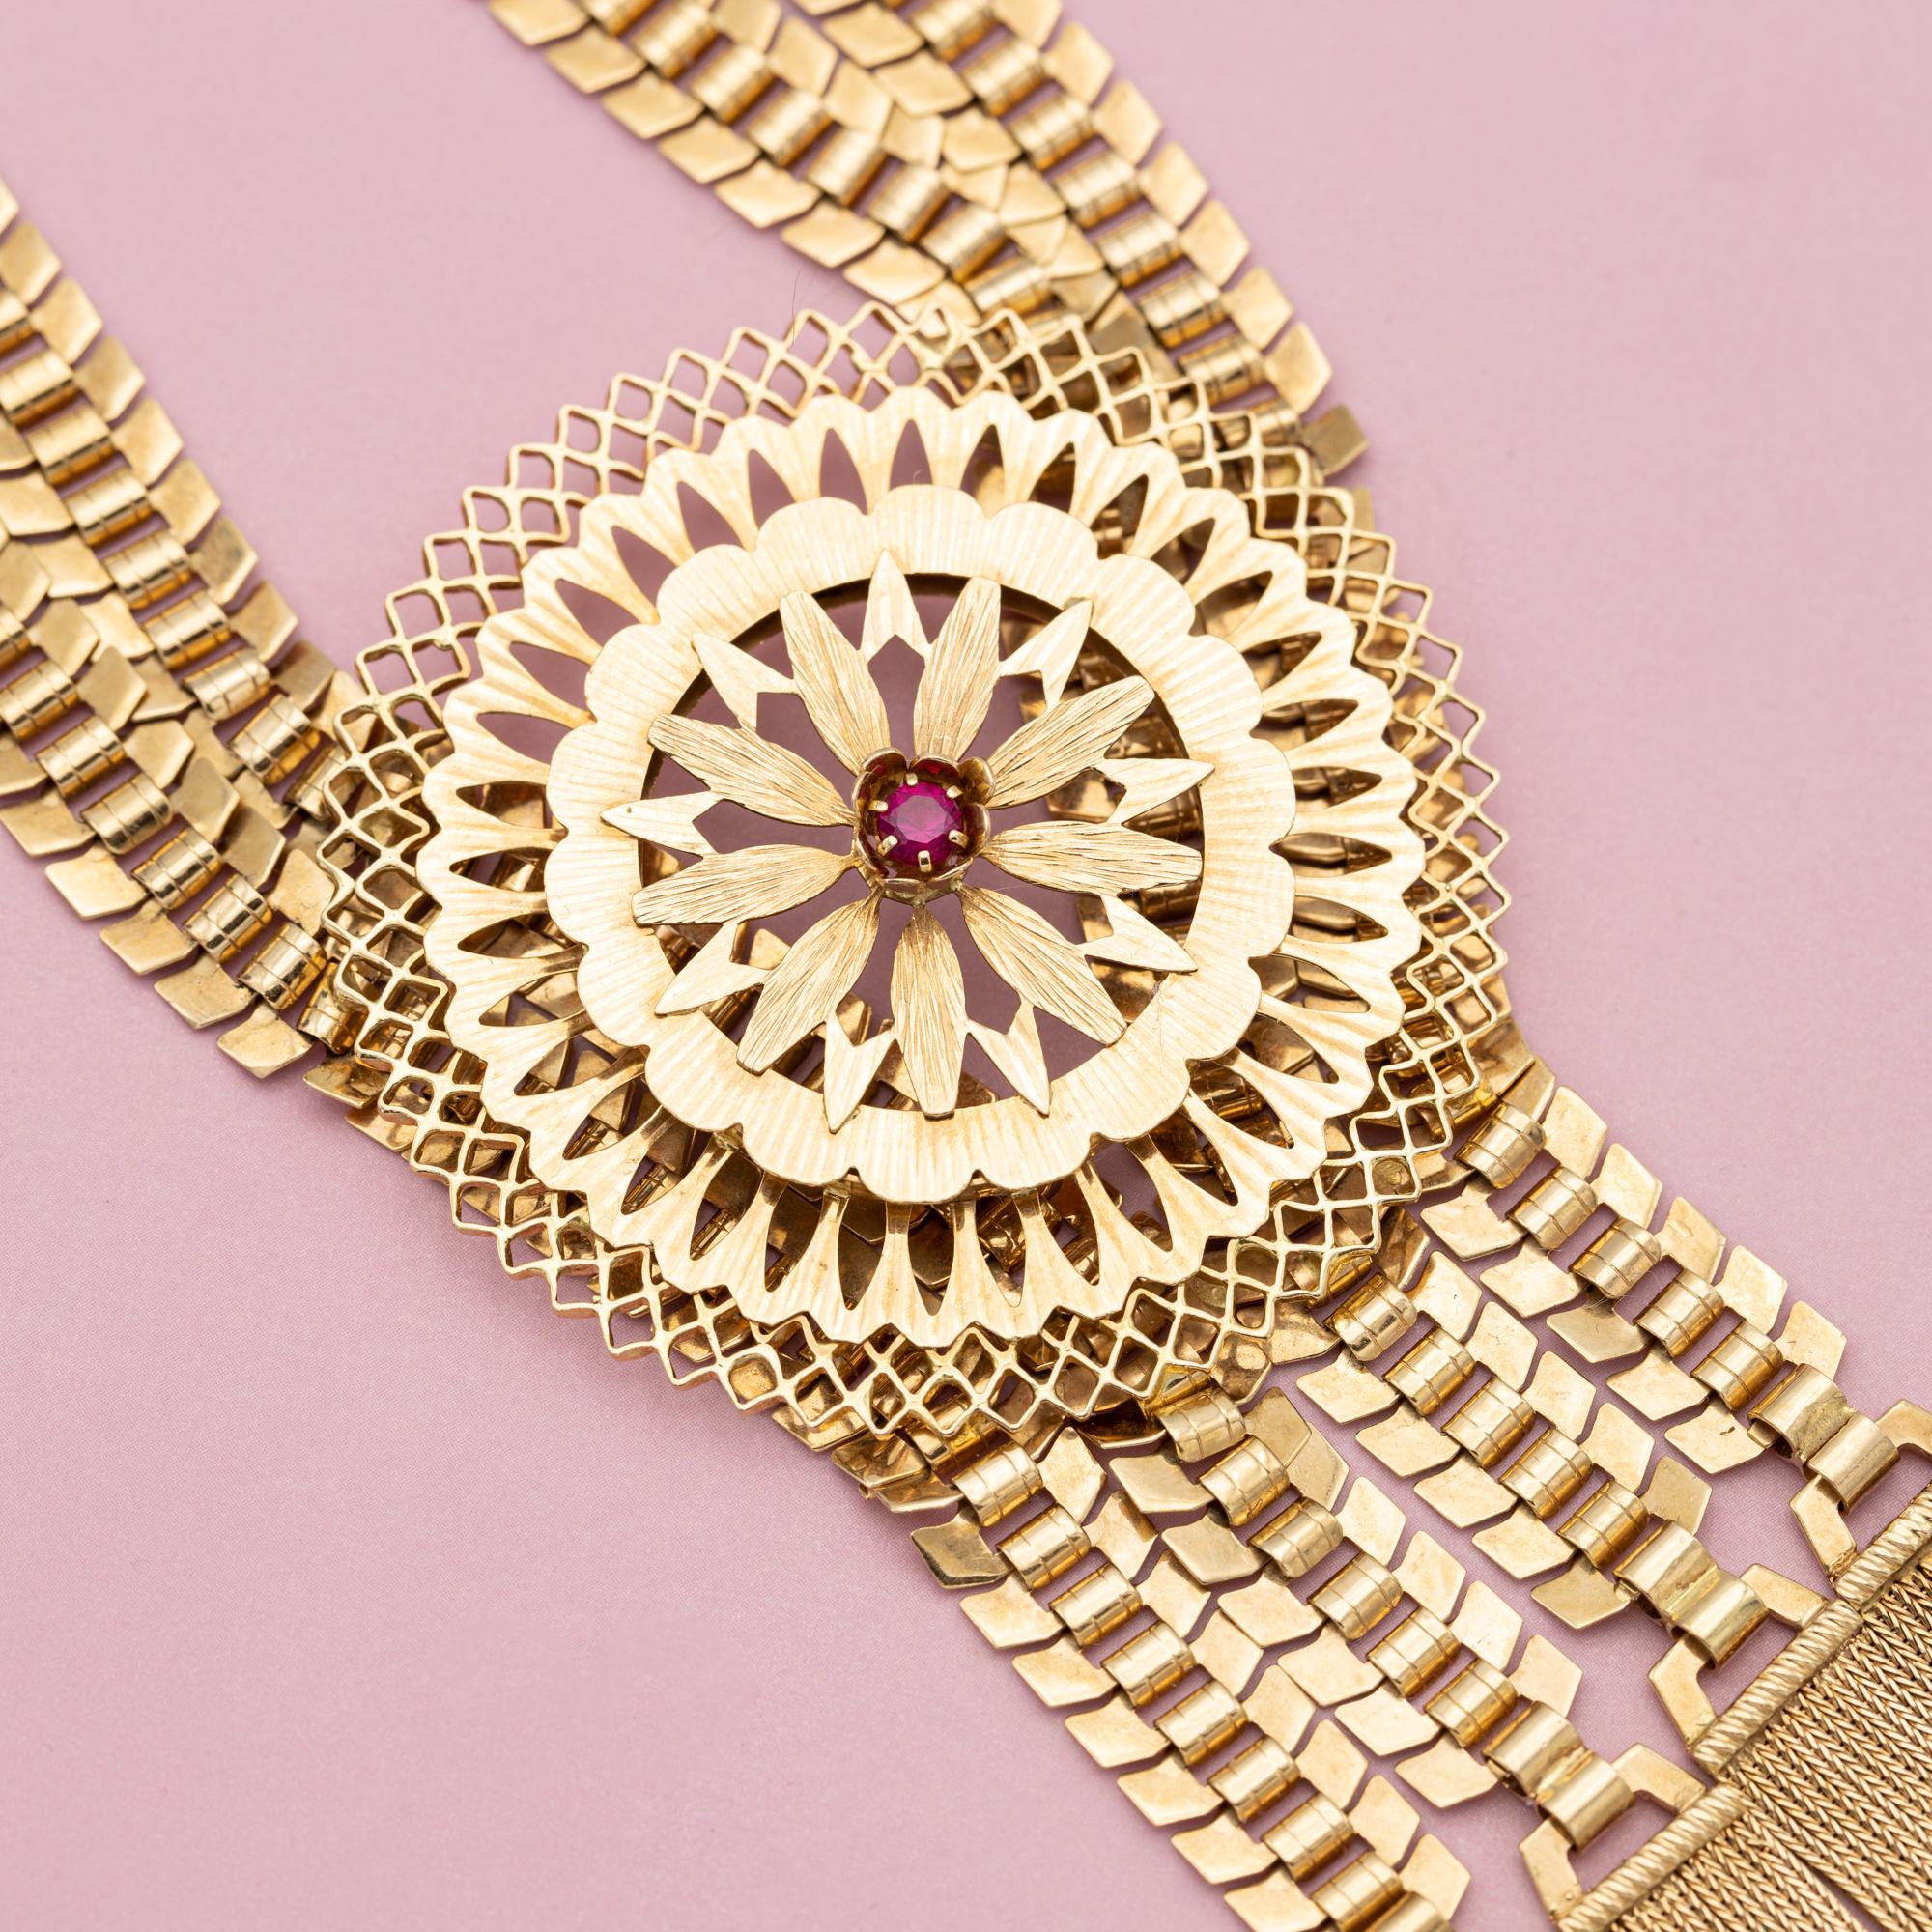 Nous vous proposons ce magnifique collier français des années 1940 (ca. 1942). Ce collier grandiose est réalisé en or jaune massif 18 carats et serti de trois belles pierres précieuses naturelles rose foncé (saphir). Le grand pendentif floral et les